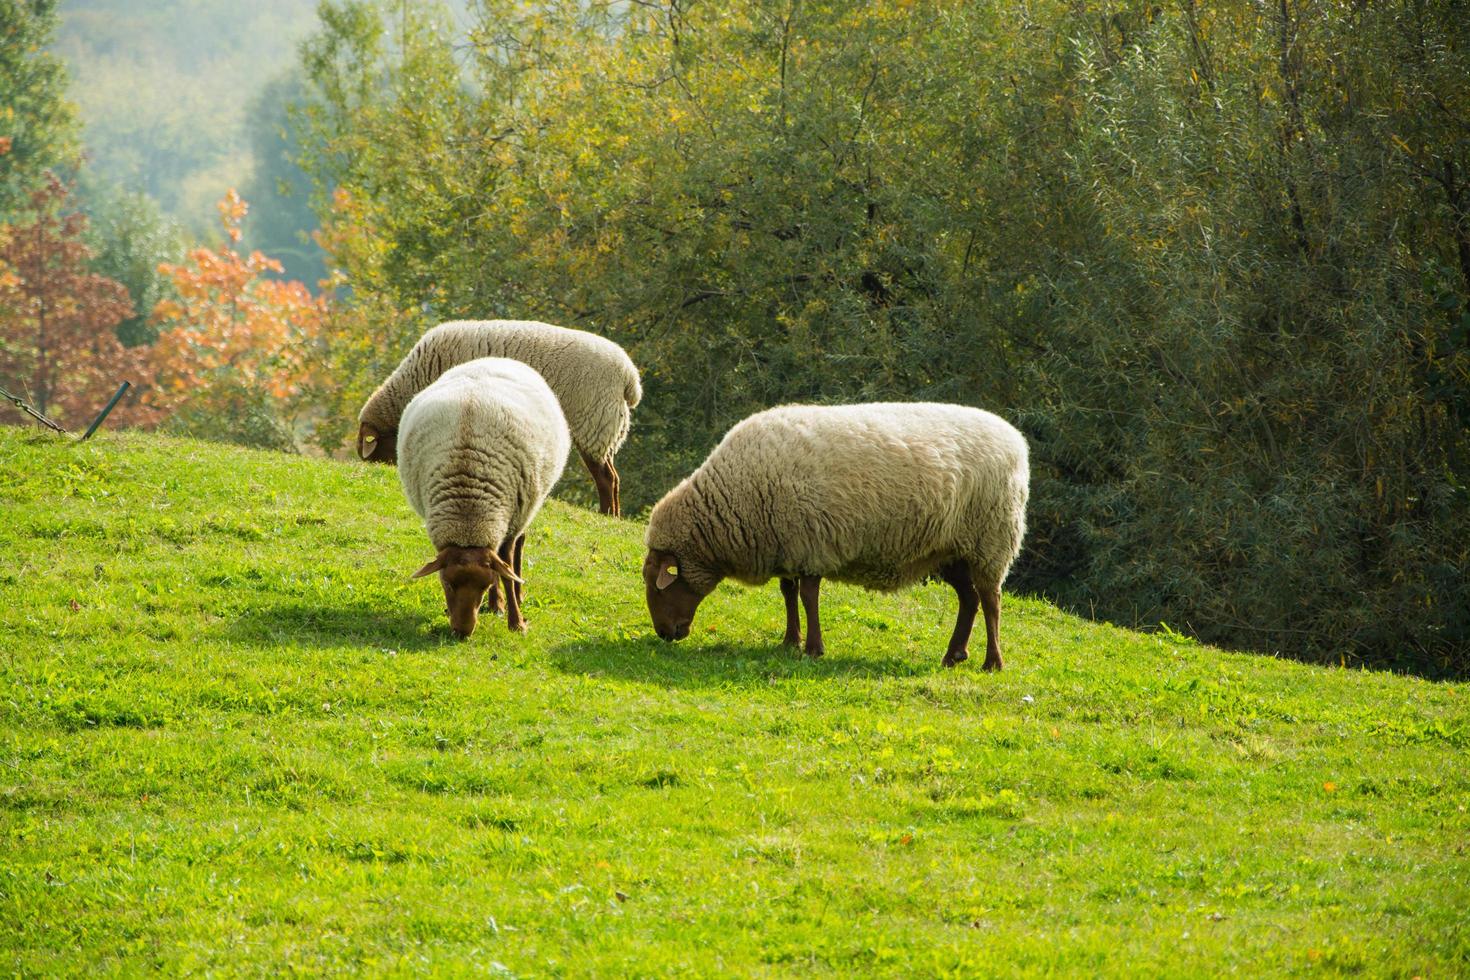 fazenda com ovelhas meny no prado verde foto